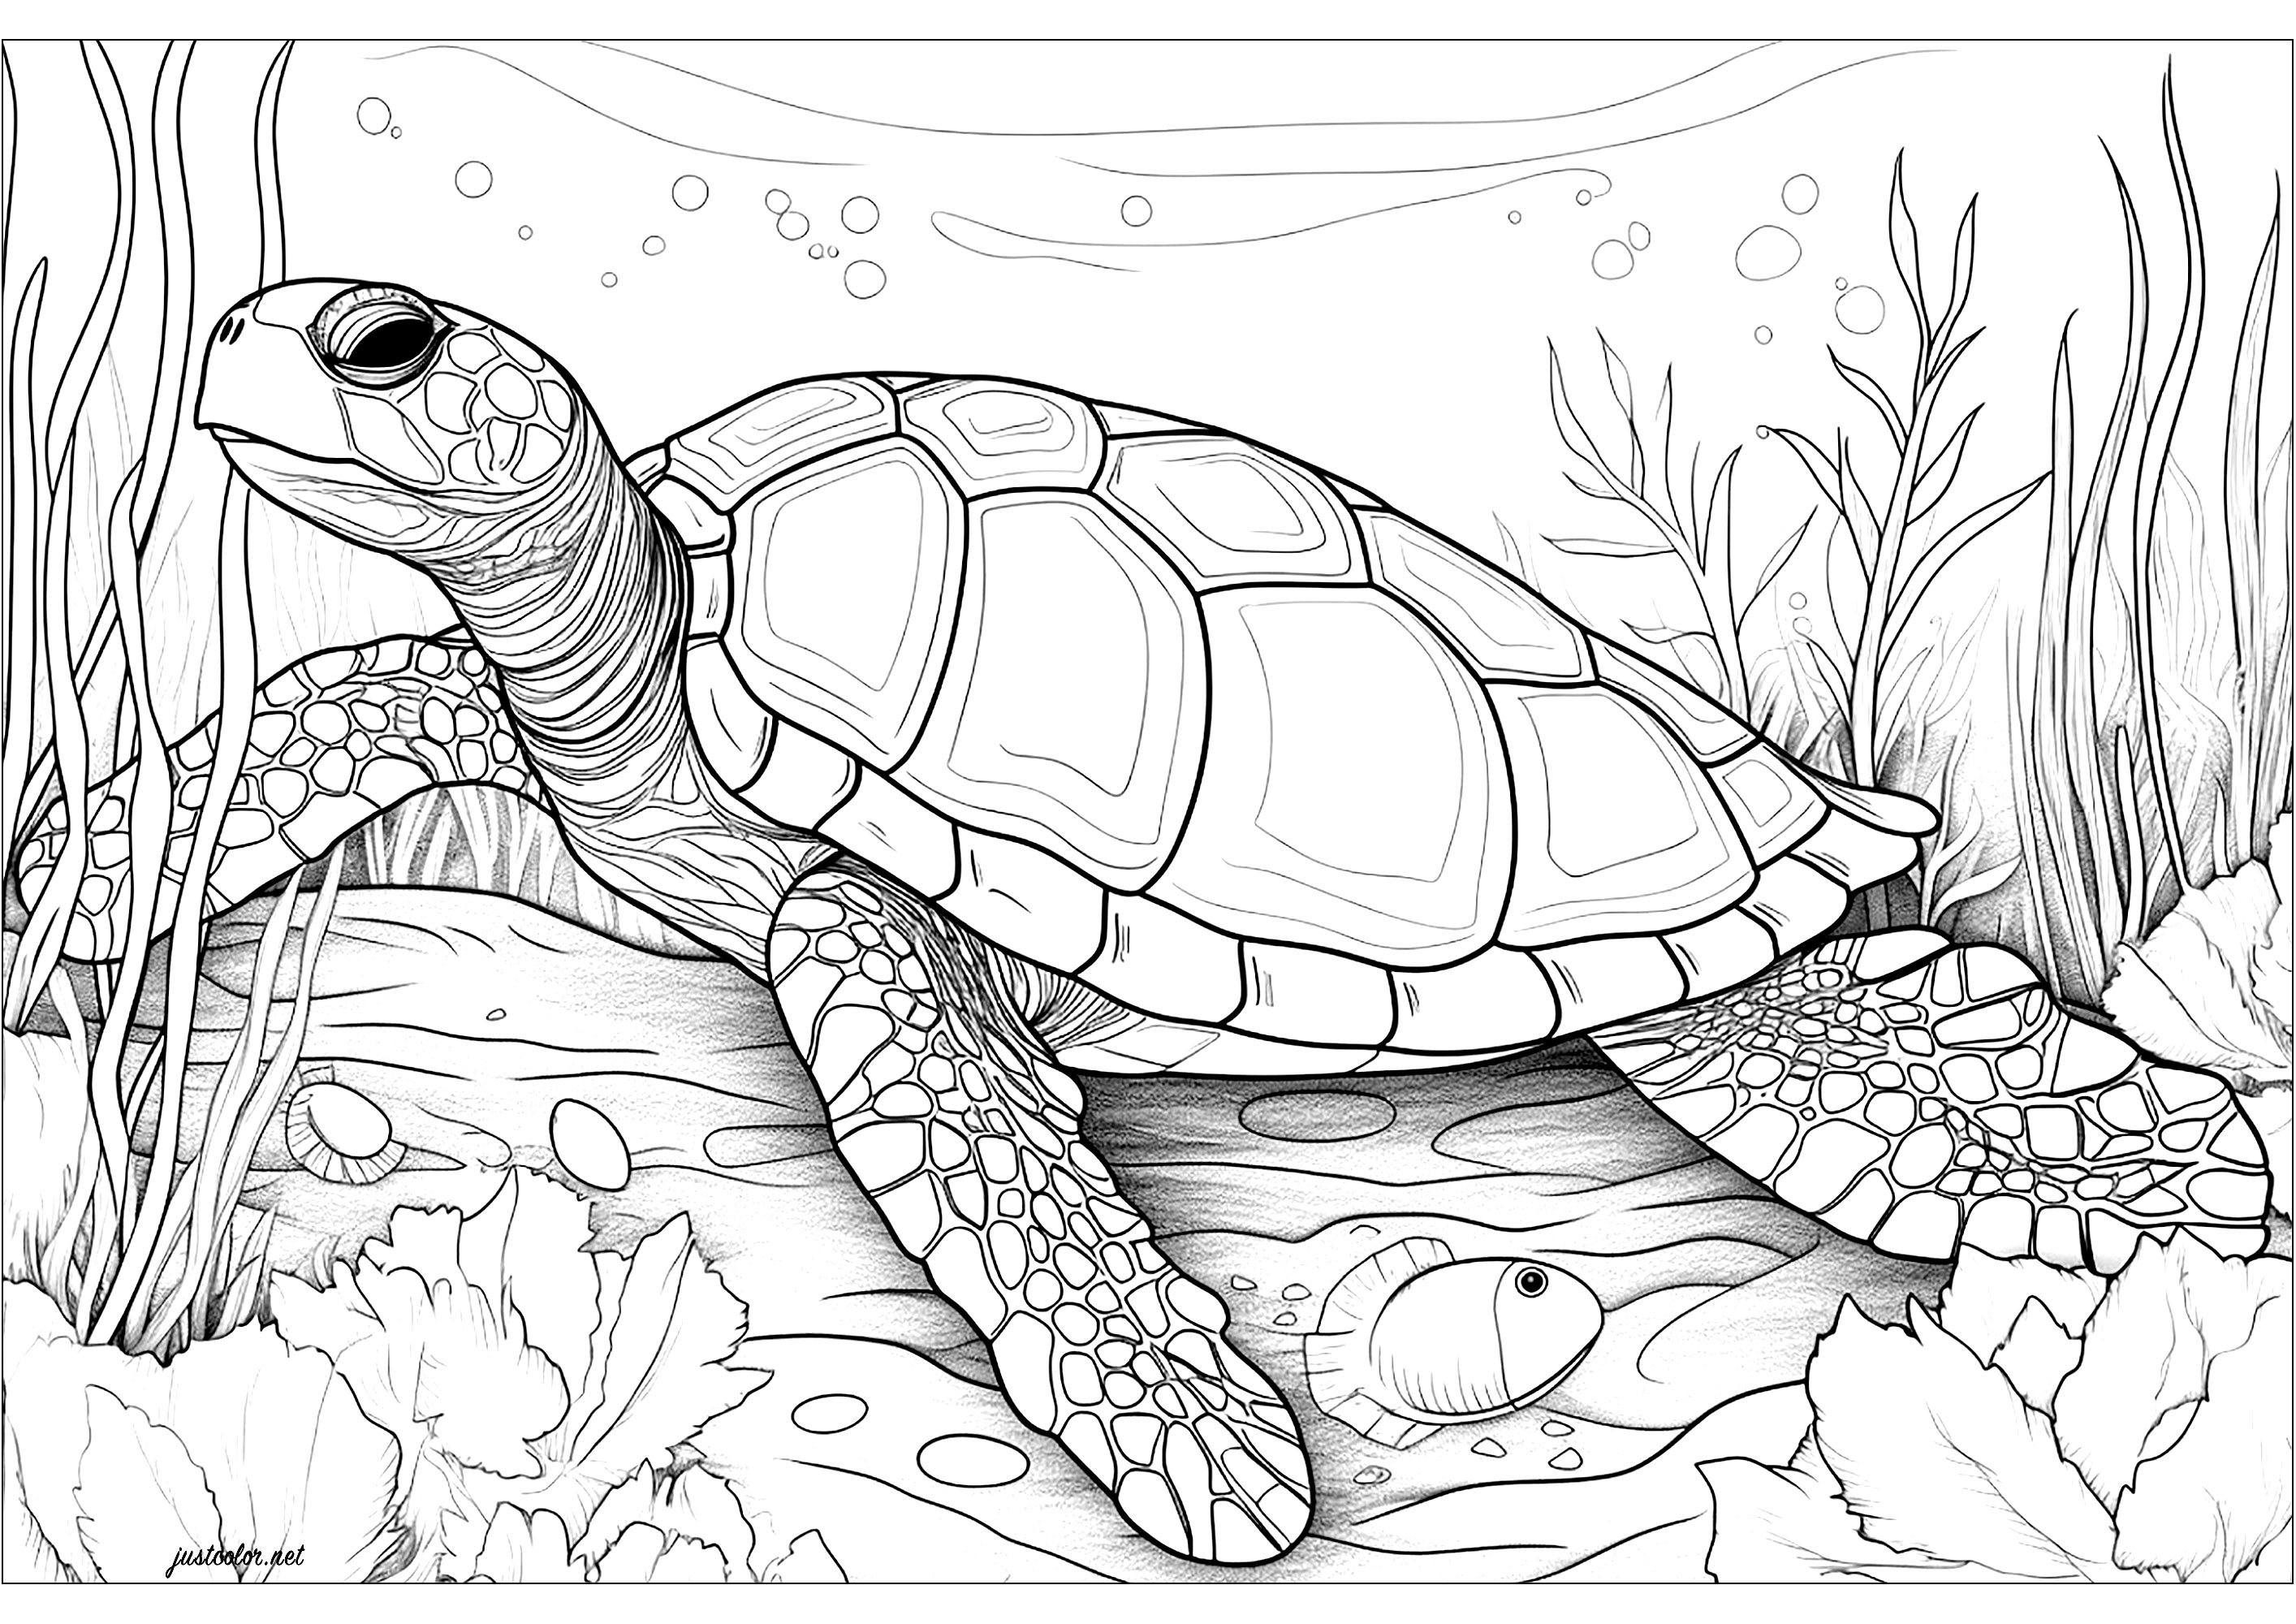 Tortuga marina grande. Una tortuga marina muy realista, de ti depende colorear los detalles de su caparazón y sus escamas. El fondo está lleno de burbujas y vegetación acuática, dando a esta página para colorear un ambiente tranquilo y sereno.